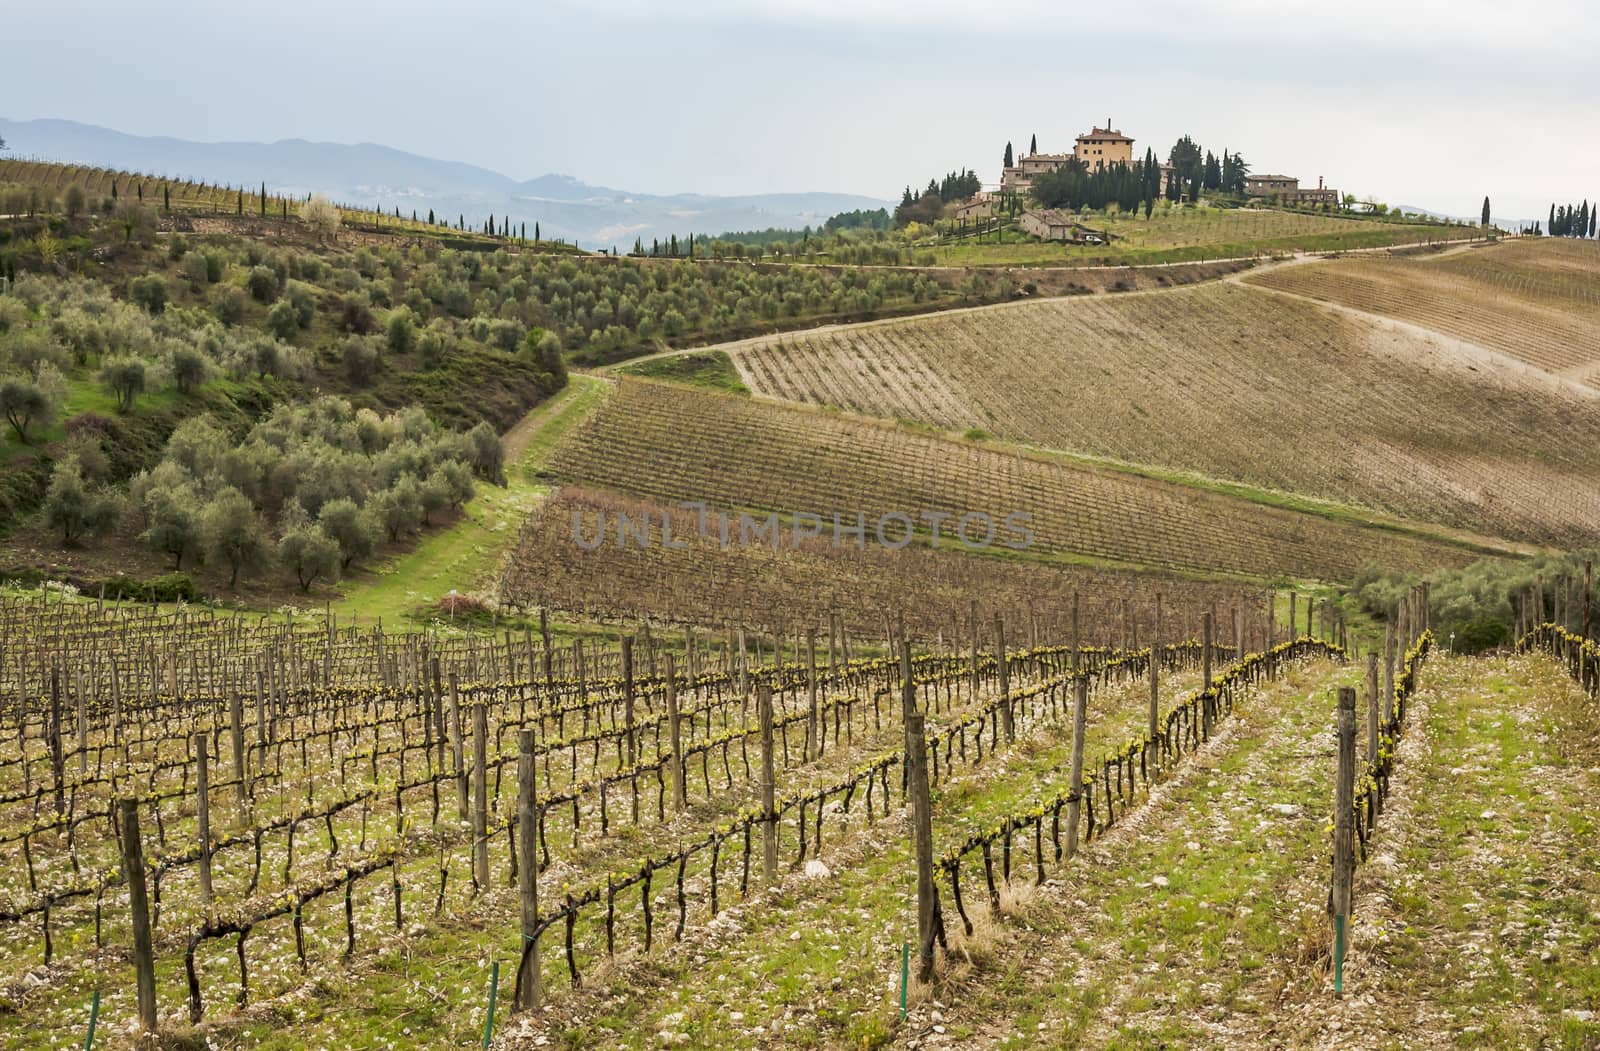 Countryside in Chianti region, Tuscany by edella